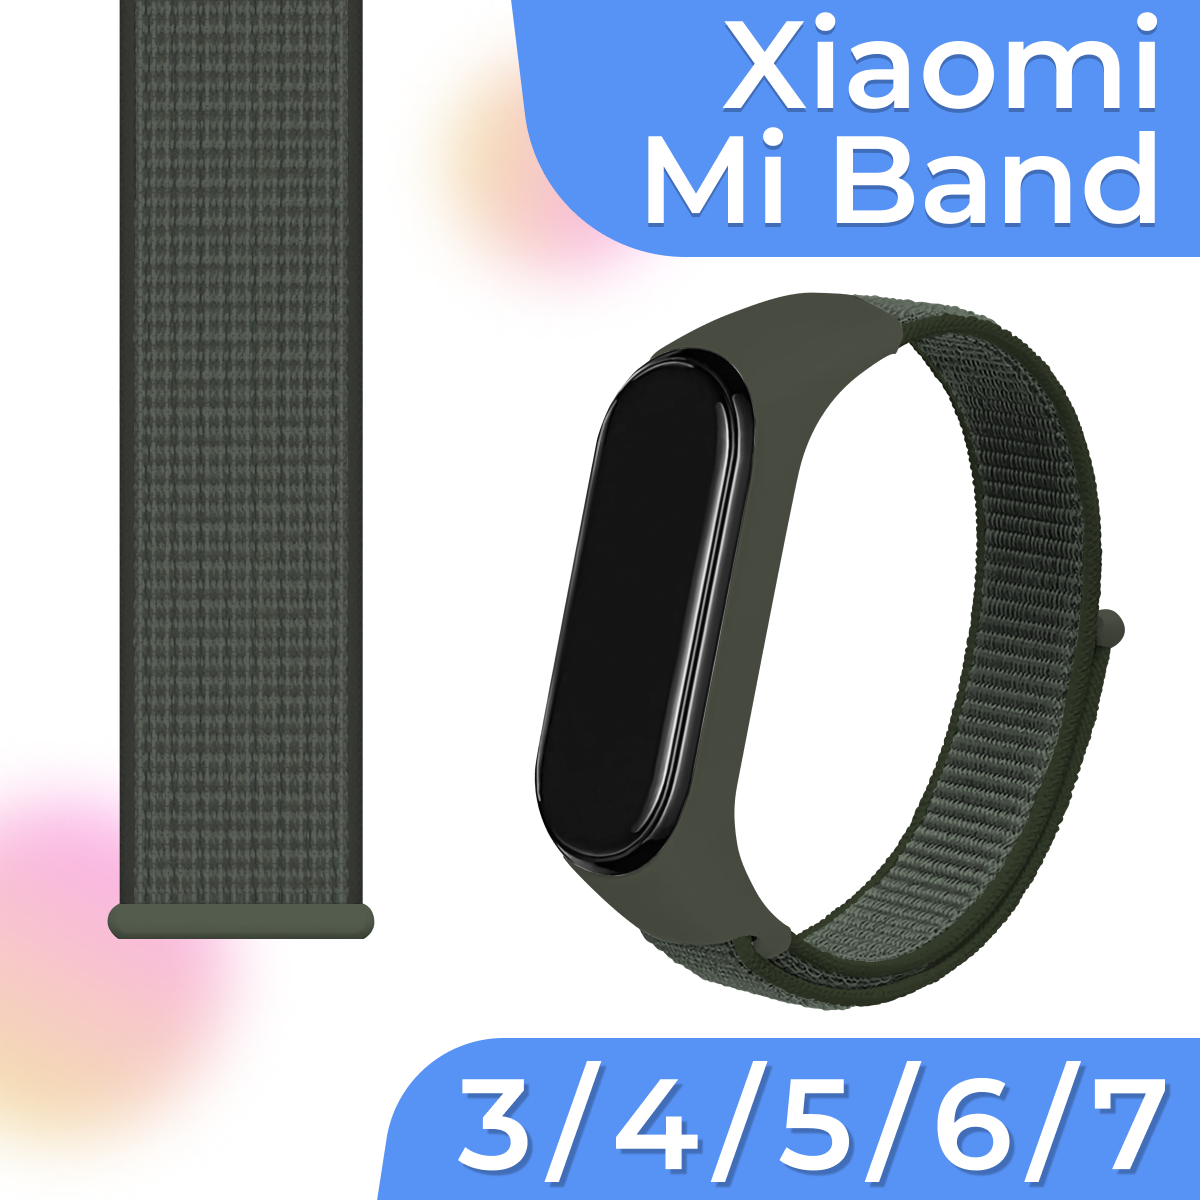 Нейлоновый браслет для смарт часов Xiaomi Mi Band 3 4 5 6 7 / Белый тканевый ремешок для Сяоми Ми Бэнд 3 4 5 6 7